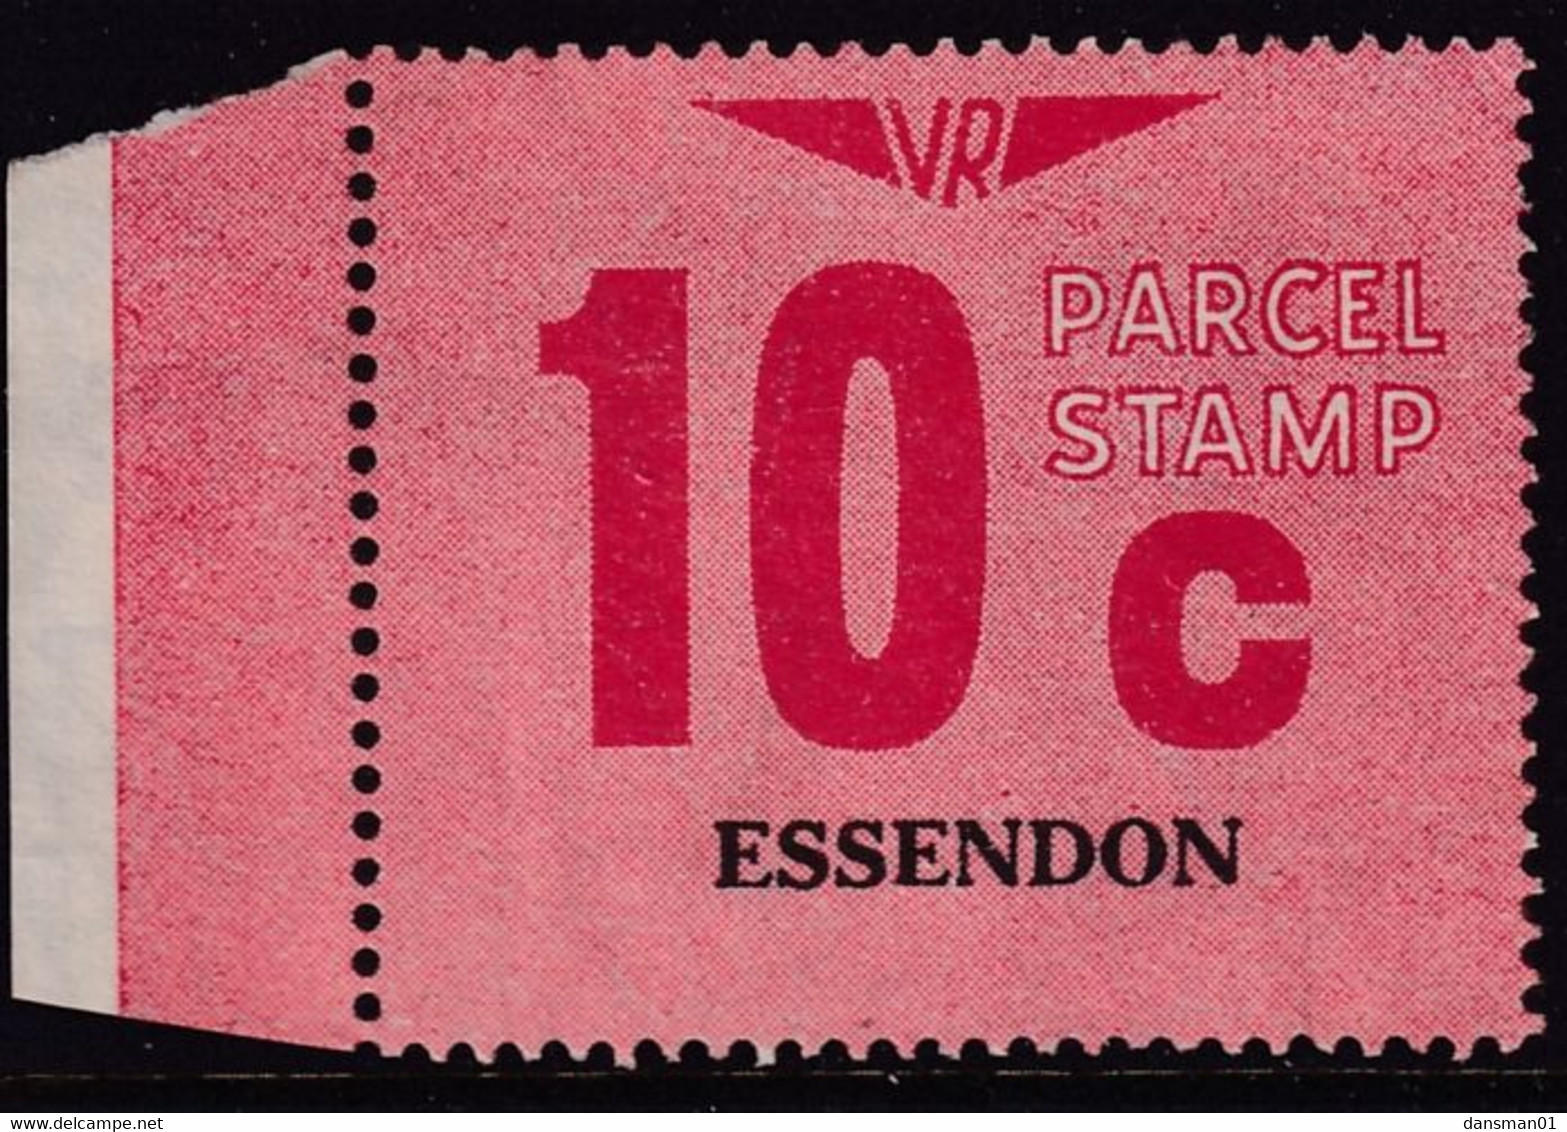 Victoria 1966 Railway Parcel Stamp 10c ESSENDON Used - Variétés Et Curiosités